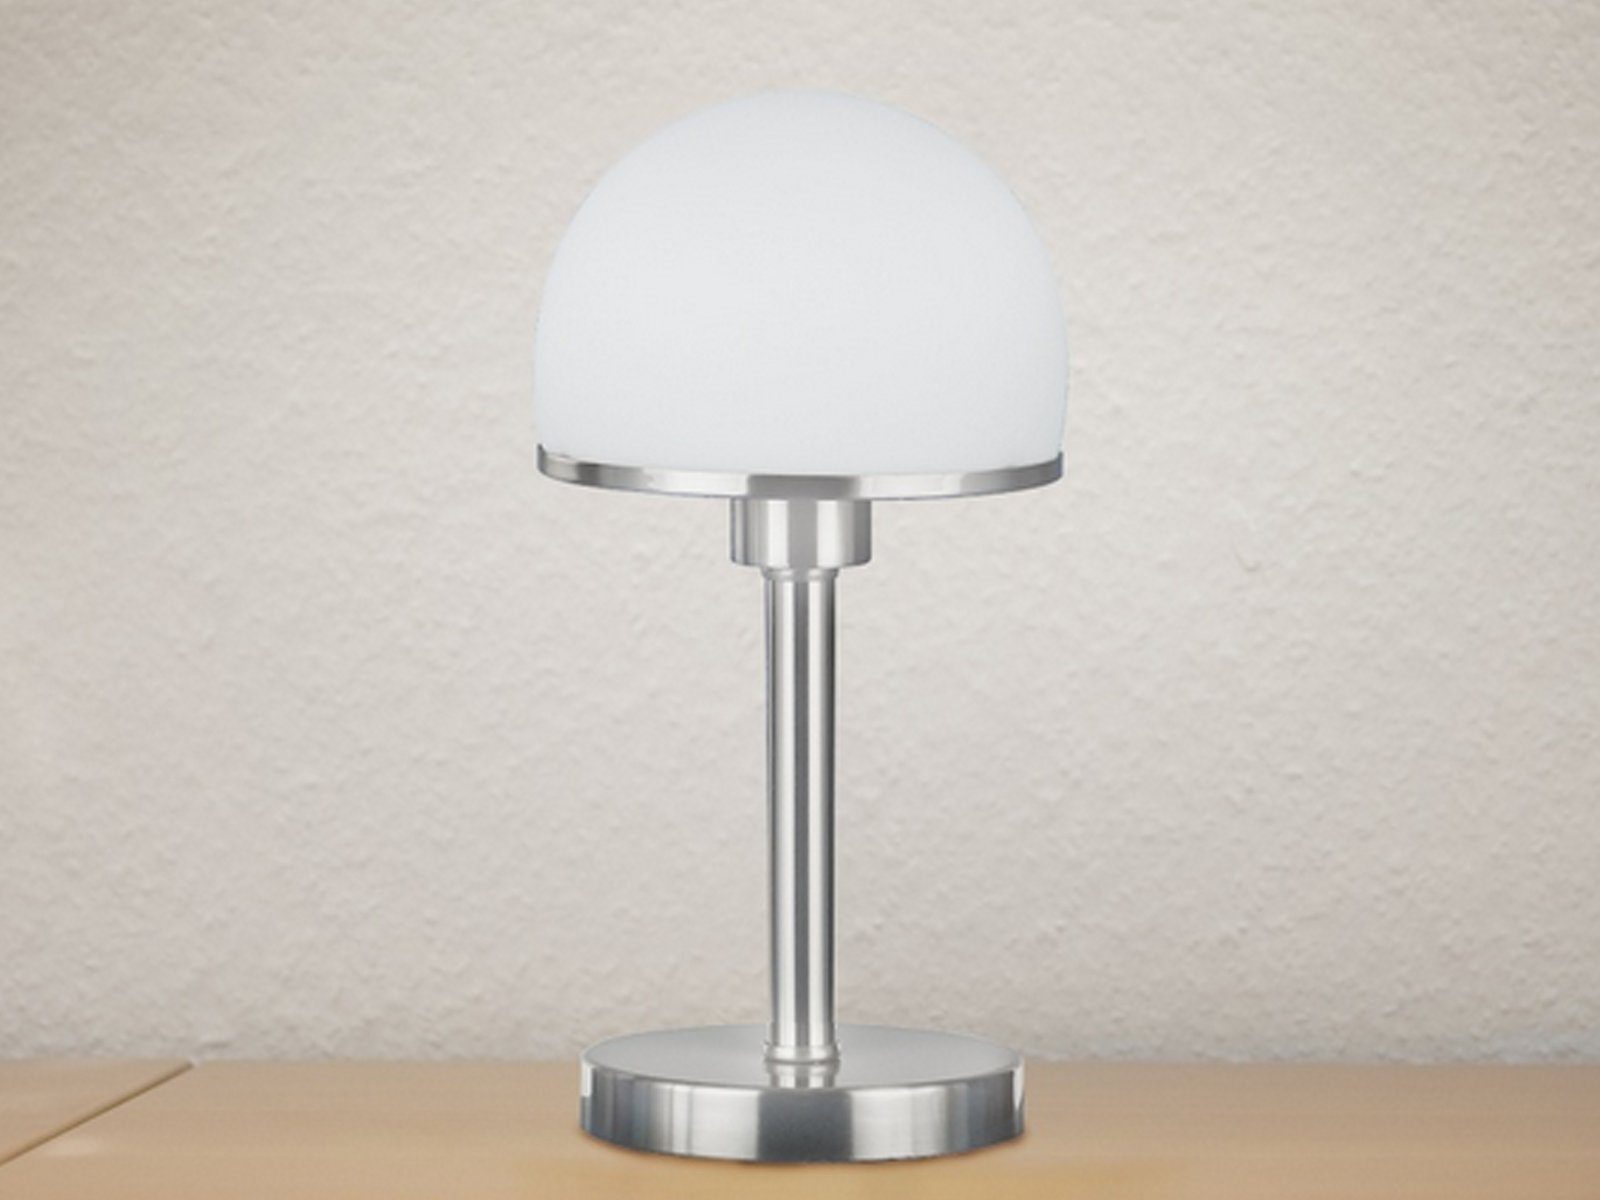 Nachttisch-lampe Dimmfunktion, dimmbar meineWunschleuchte 39cm LED Lampenschirm Touch LED Fensterbank Nachttischlampe, Höhe Glas wechselbar,